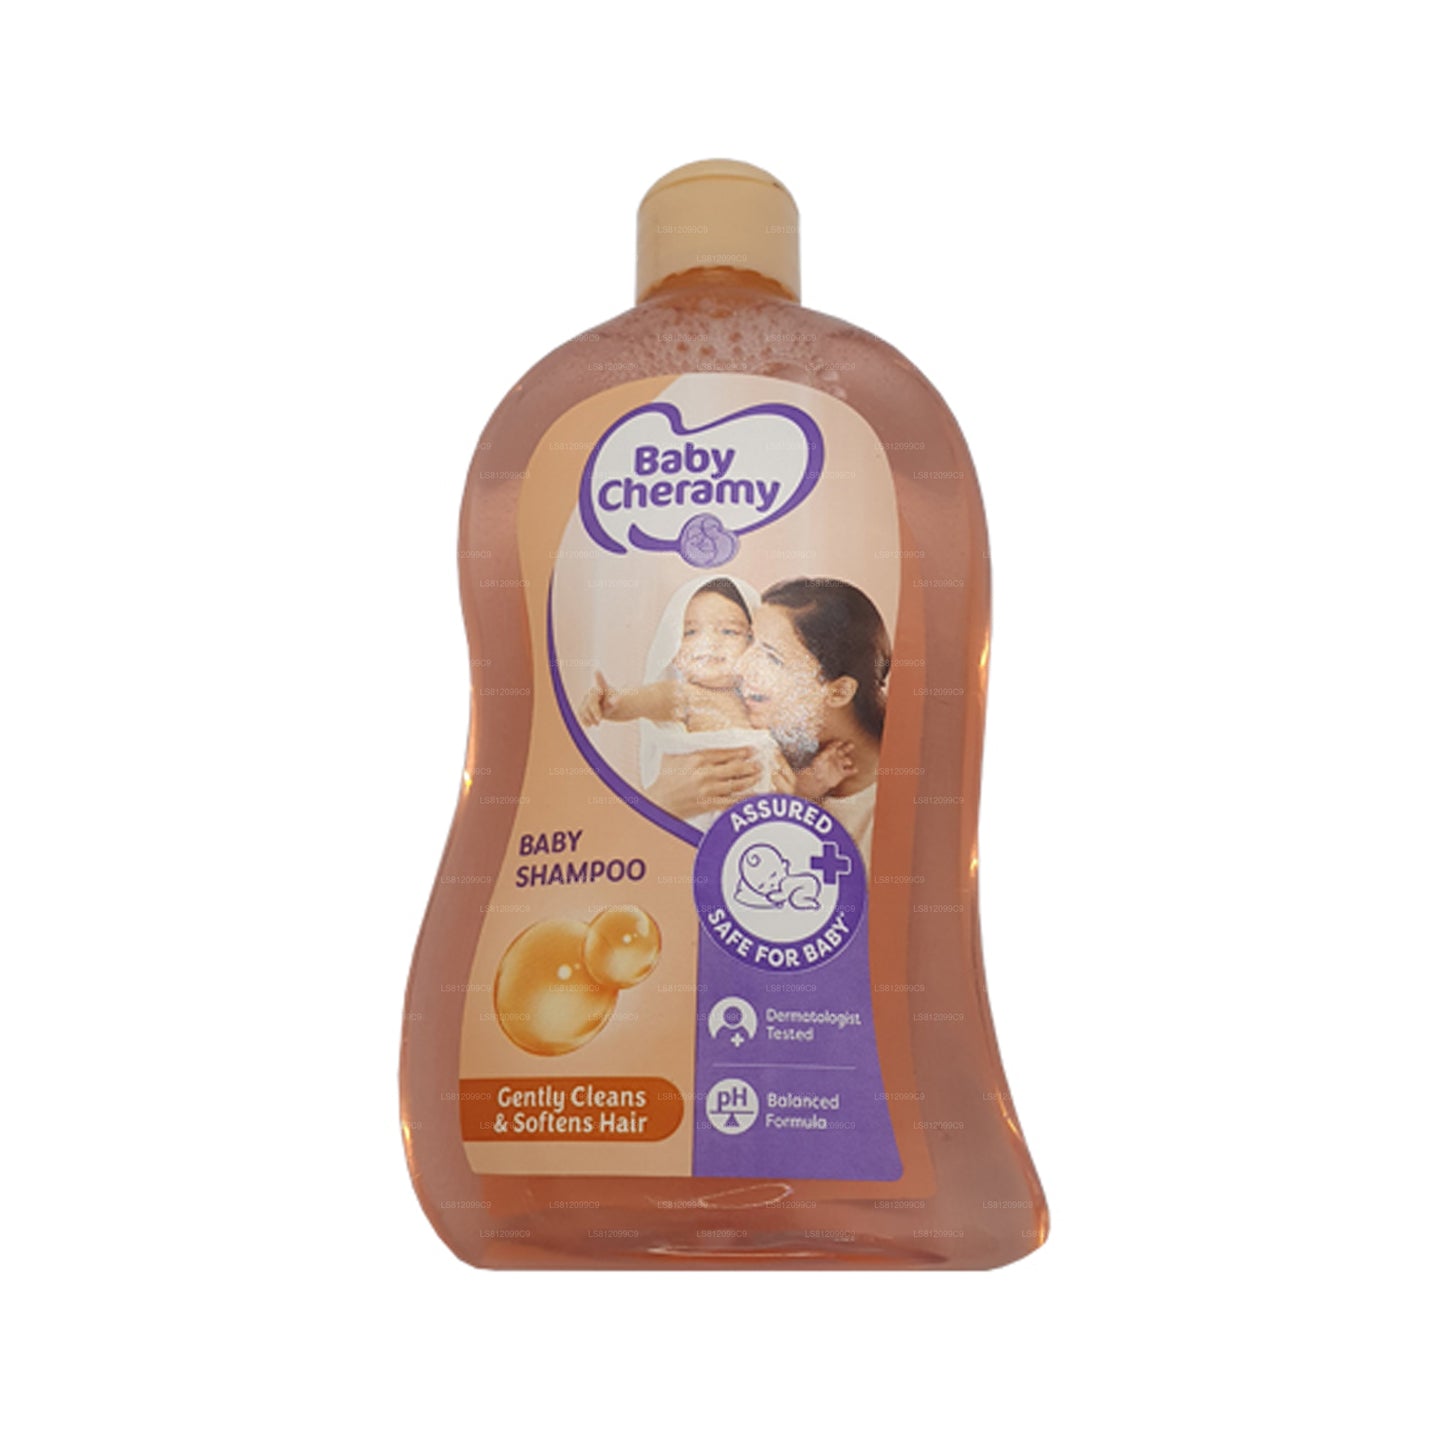 Baby Cheramy Baby Shampoo (200ml)